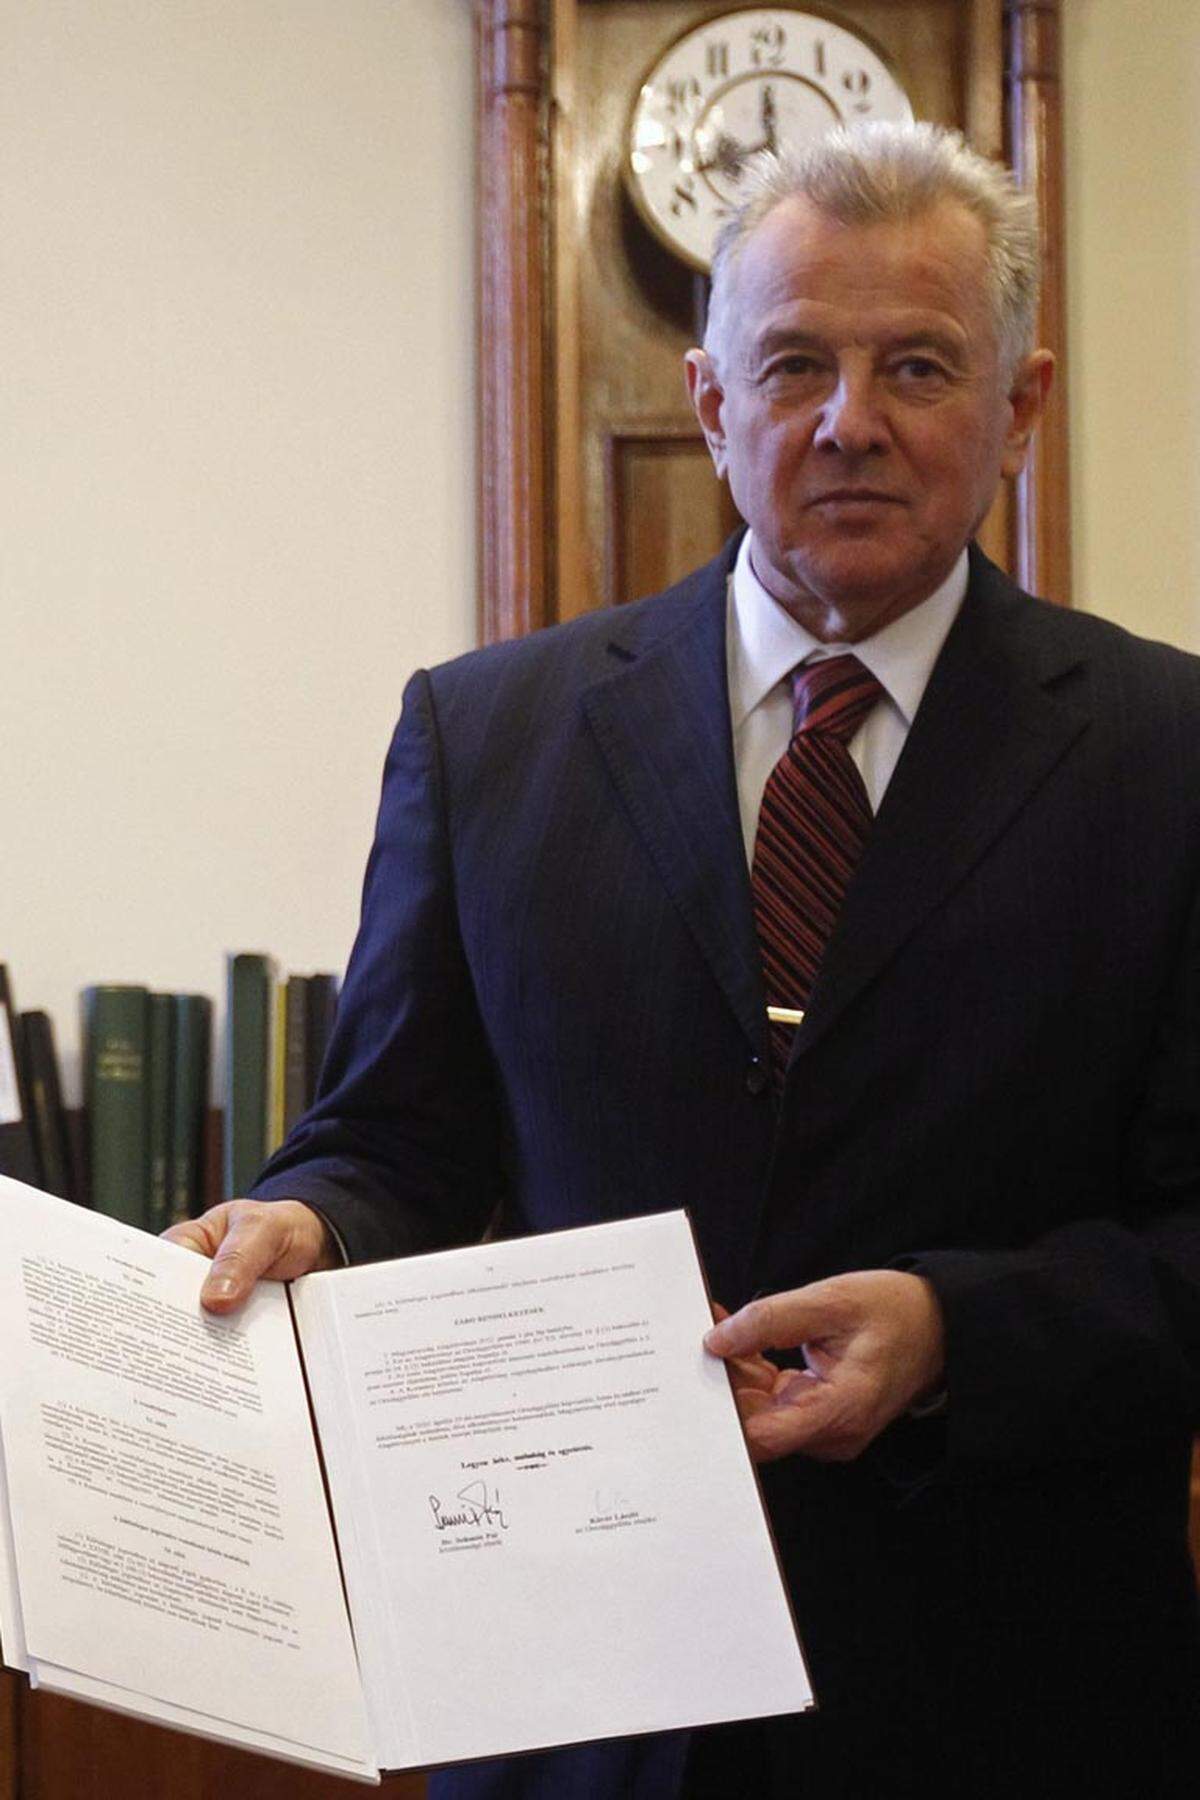 Den ungarischen Staatspräsident Pal Schmitt brachte sein Plagiat zu Fall: Er hat den Großteil seiner Doktorarbeit abgeschrieben. Der Doktortitel wurde ihm aberkannt, schlussendlich ist er zurückgetreten.